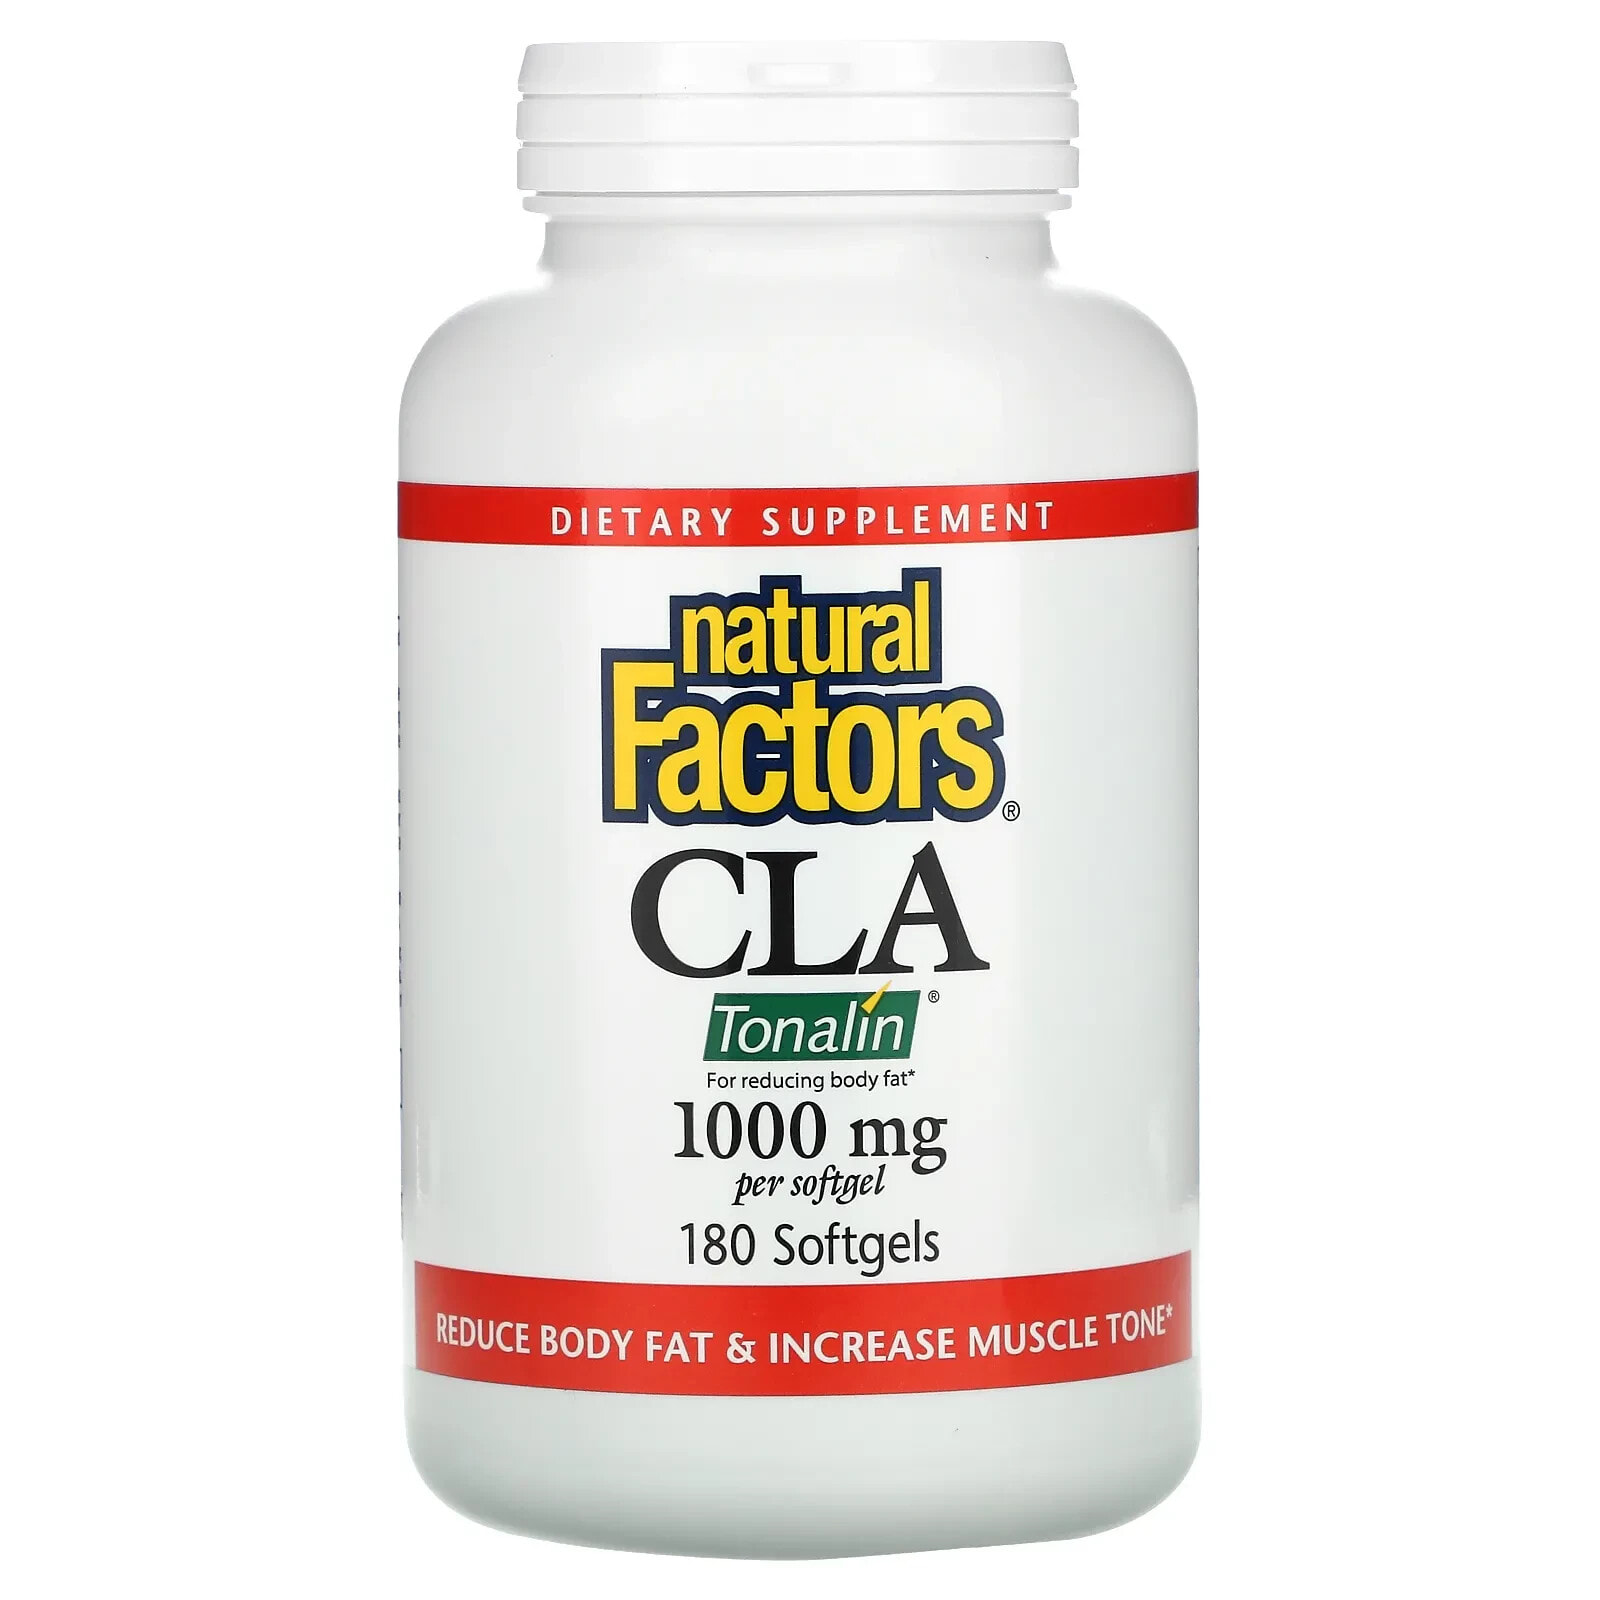 Natural Factors, CLA, смесь конъюгированной линолевой кислоты, 1000 мг, 180 мягких таблеток